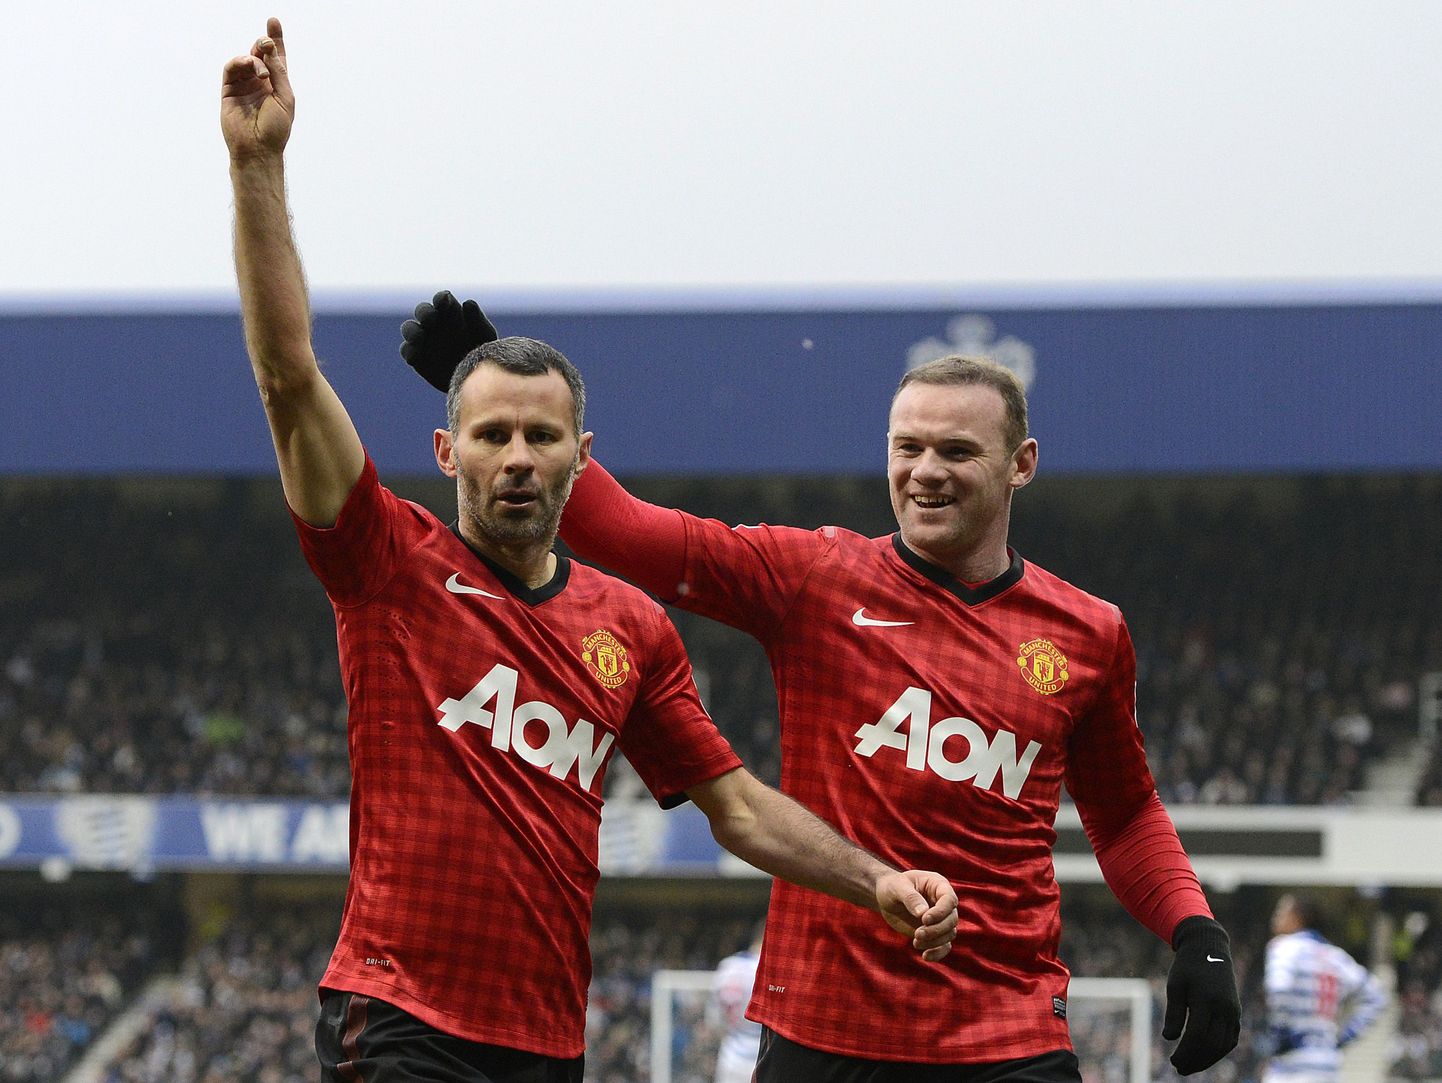 Ryan Giggs (vasakul) koos Wayne Rooney'ga väravat tähistamas.